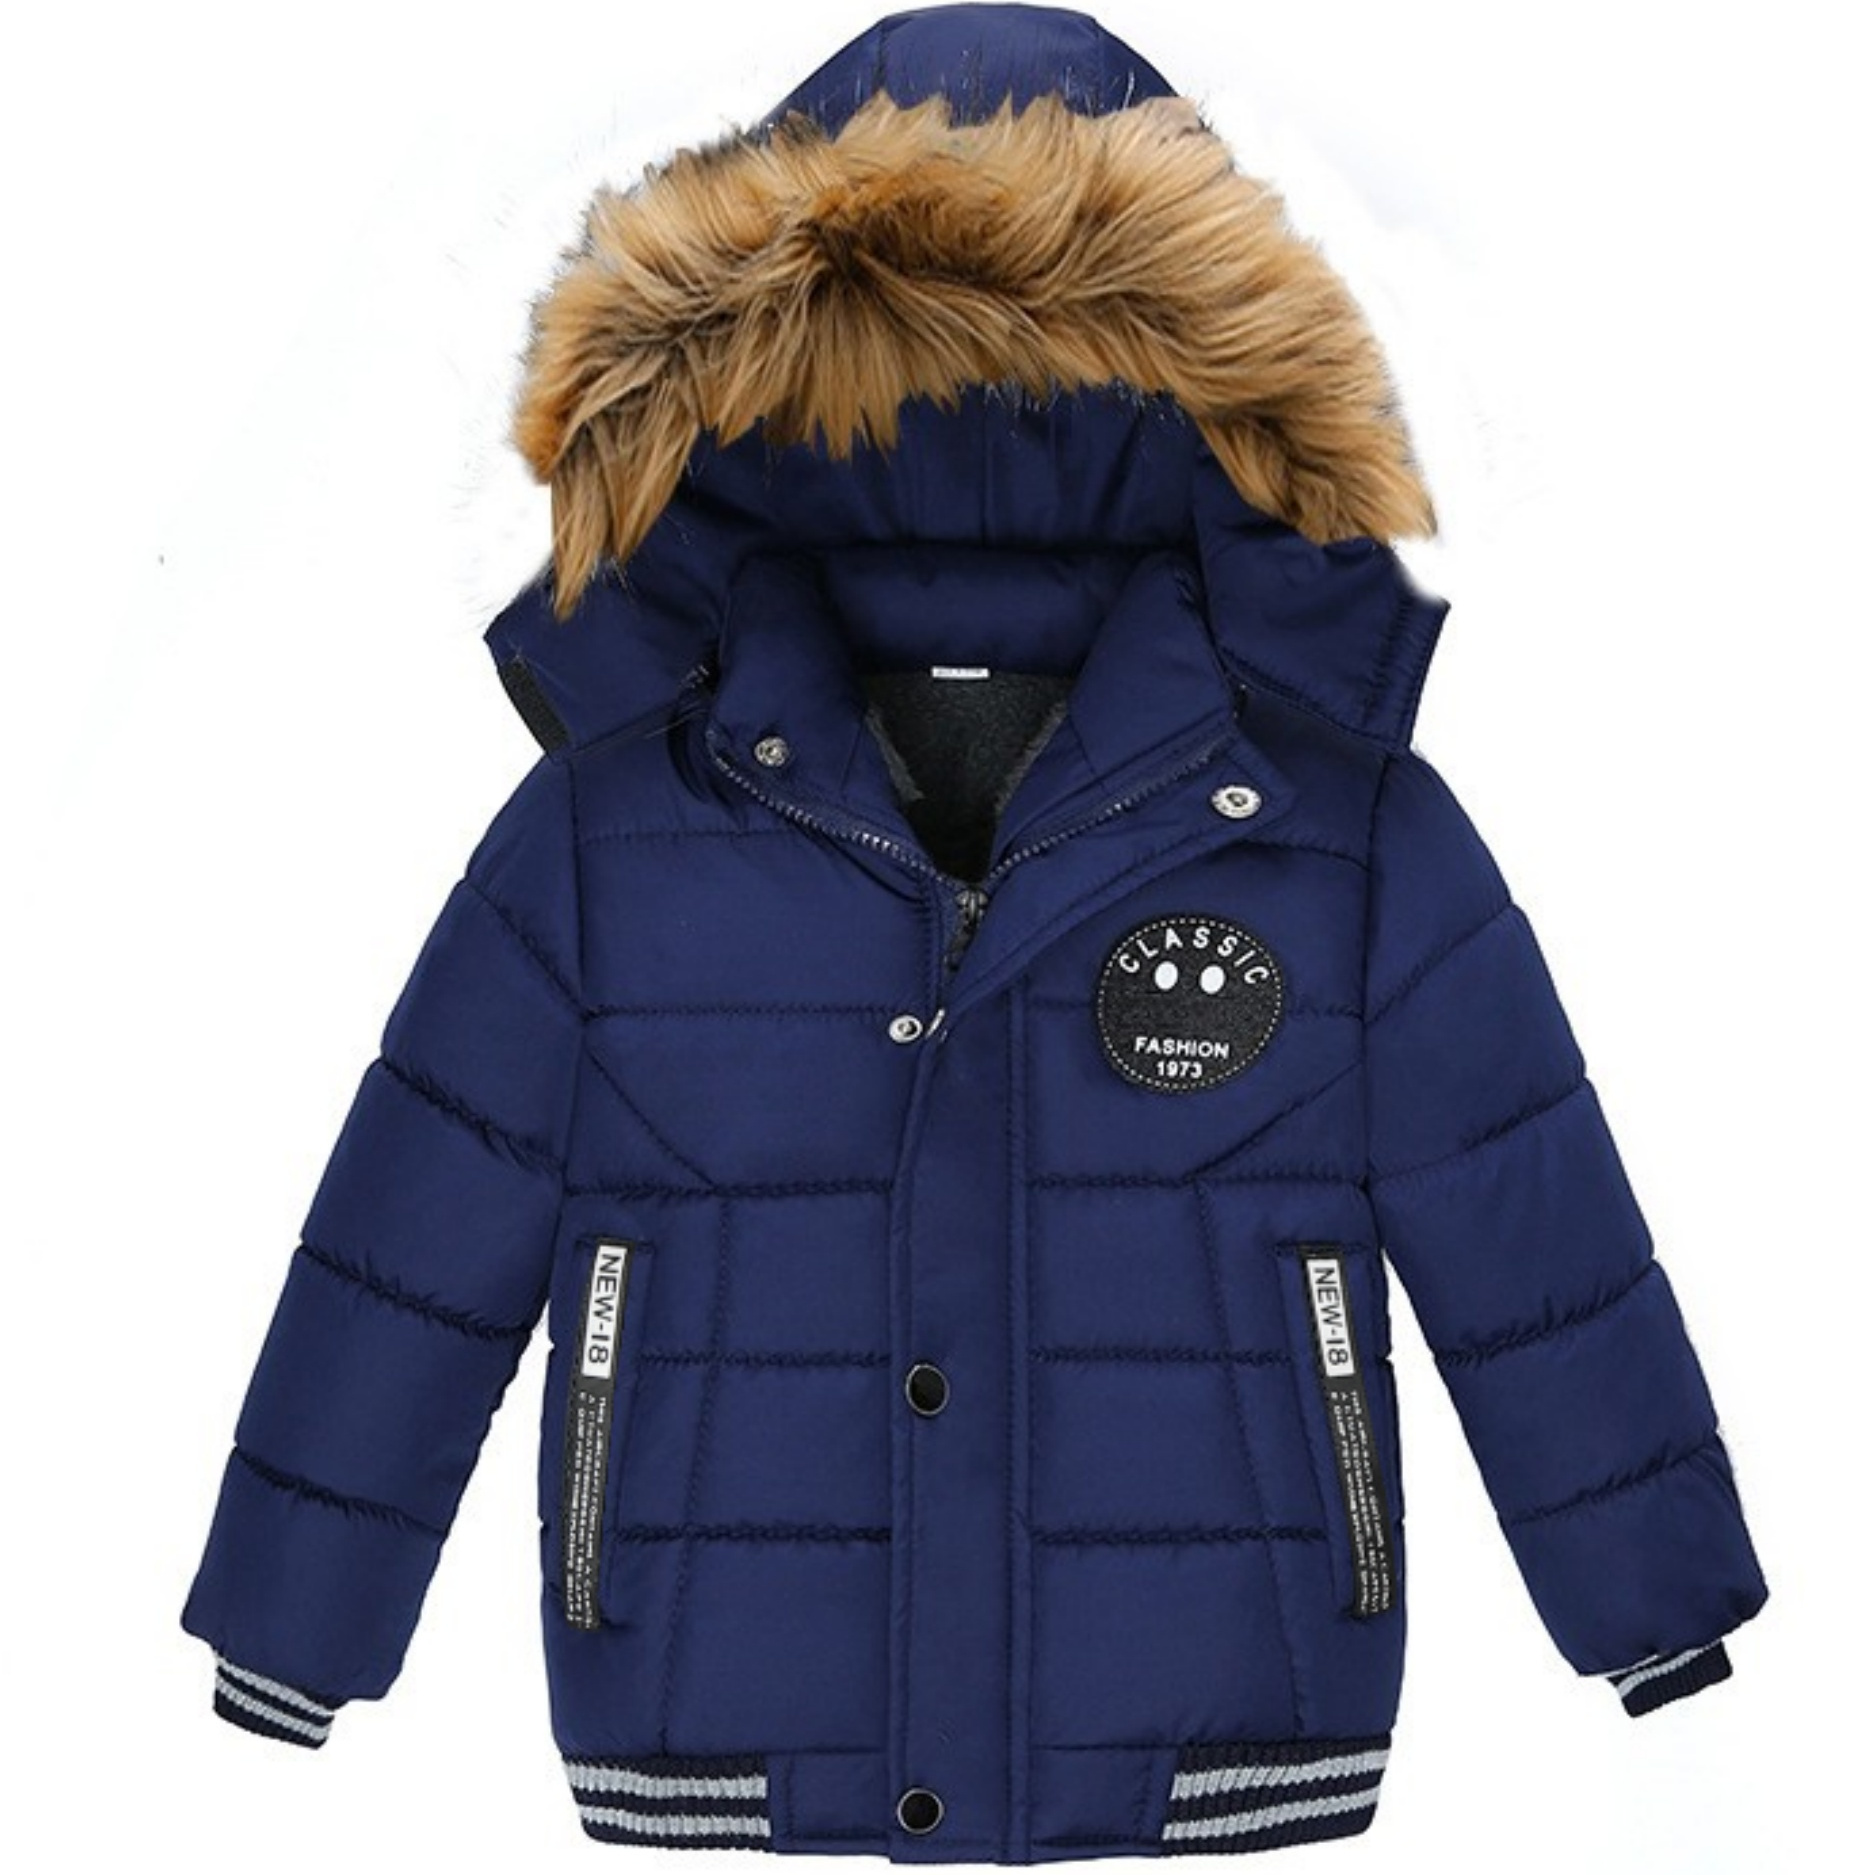 

Boys Winter Hooded Coat, Padded Light Warm Jacket Cute Hooded Outerwear